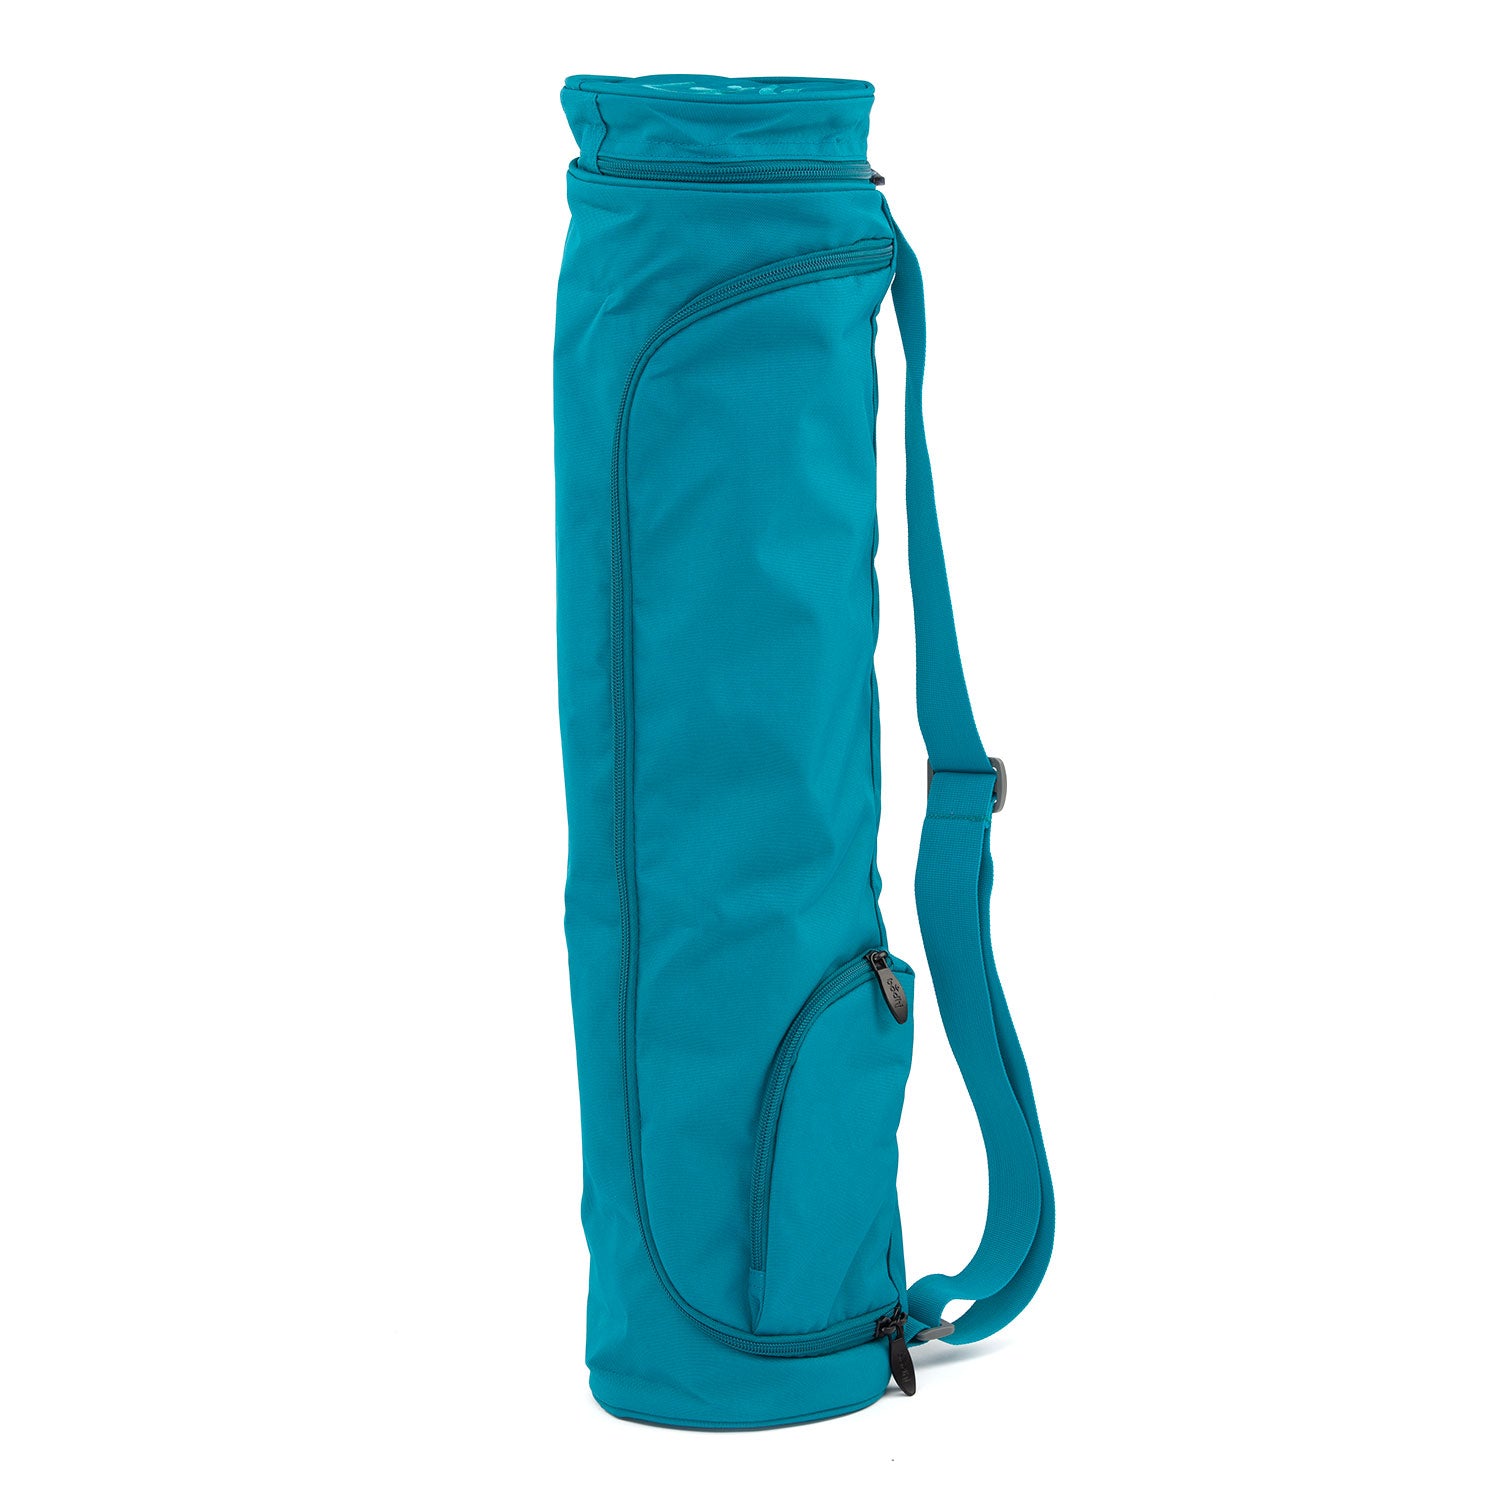 Bolsa para Esterilla de Yoga Asana Bag XL